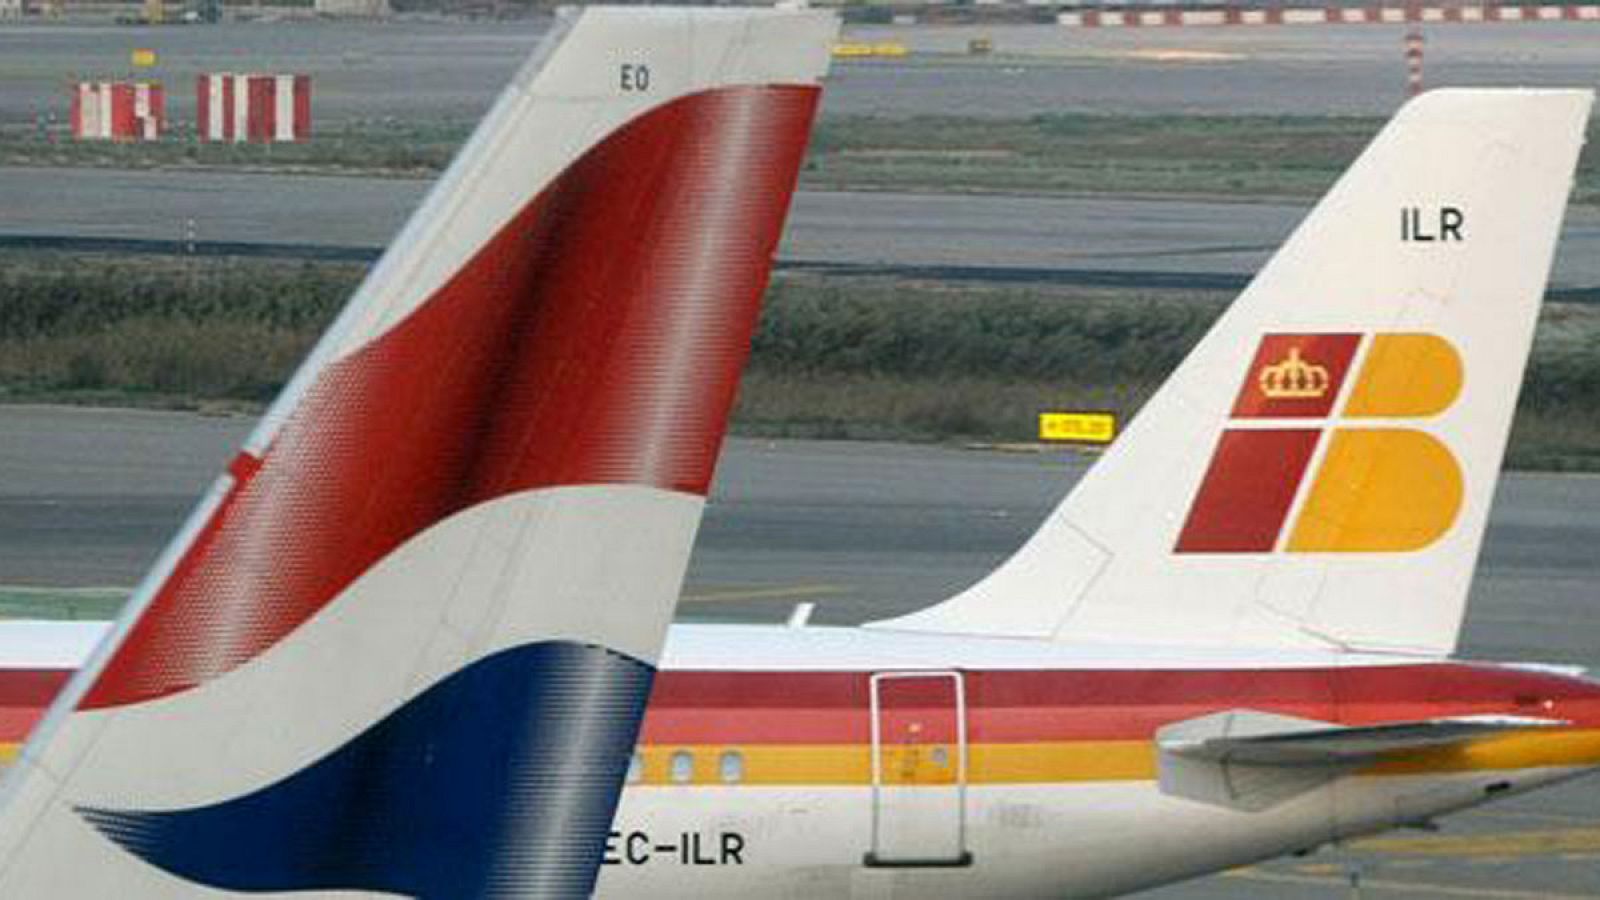 Colas de aviones de British Airways e Iberia